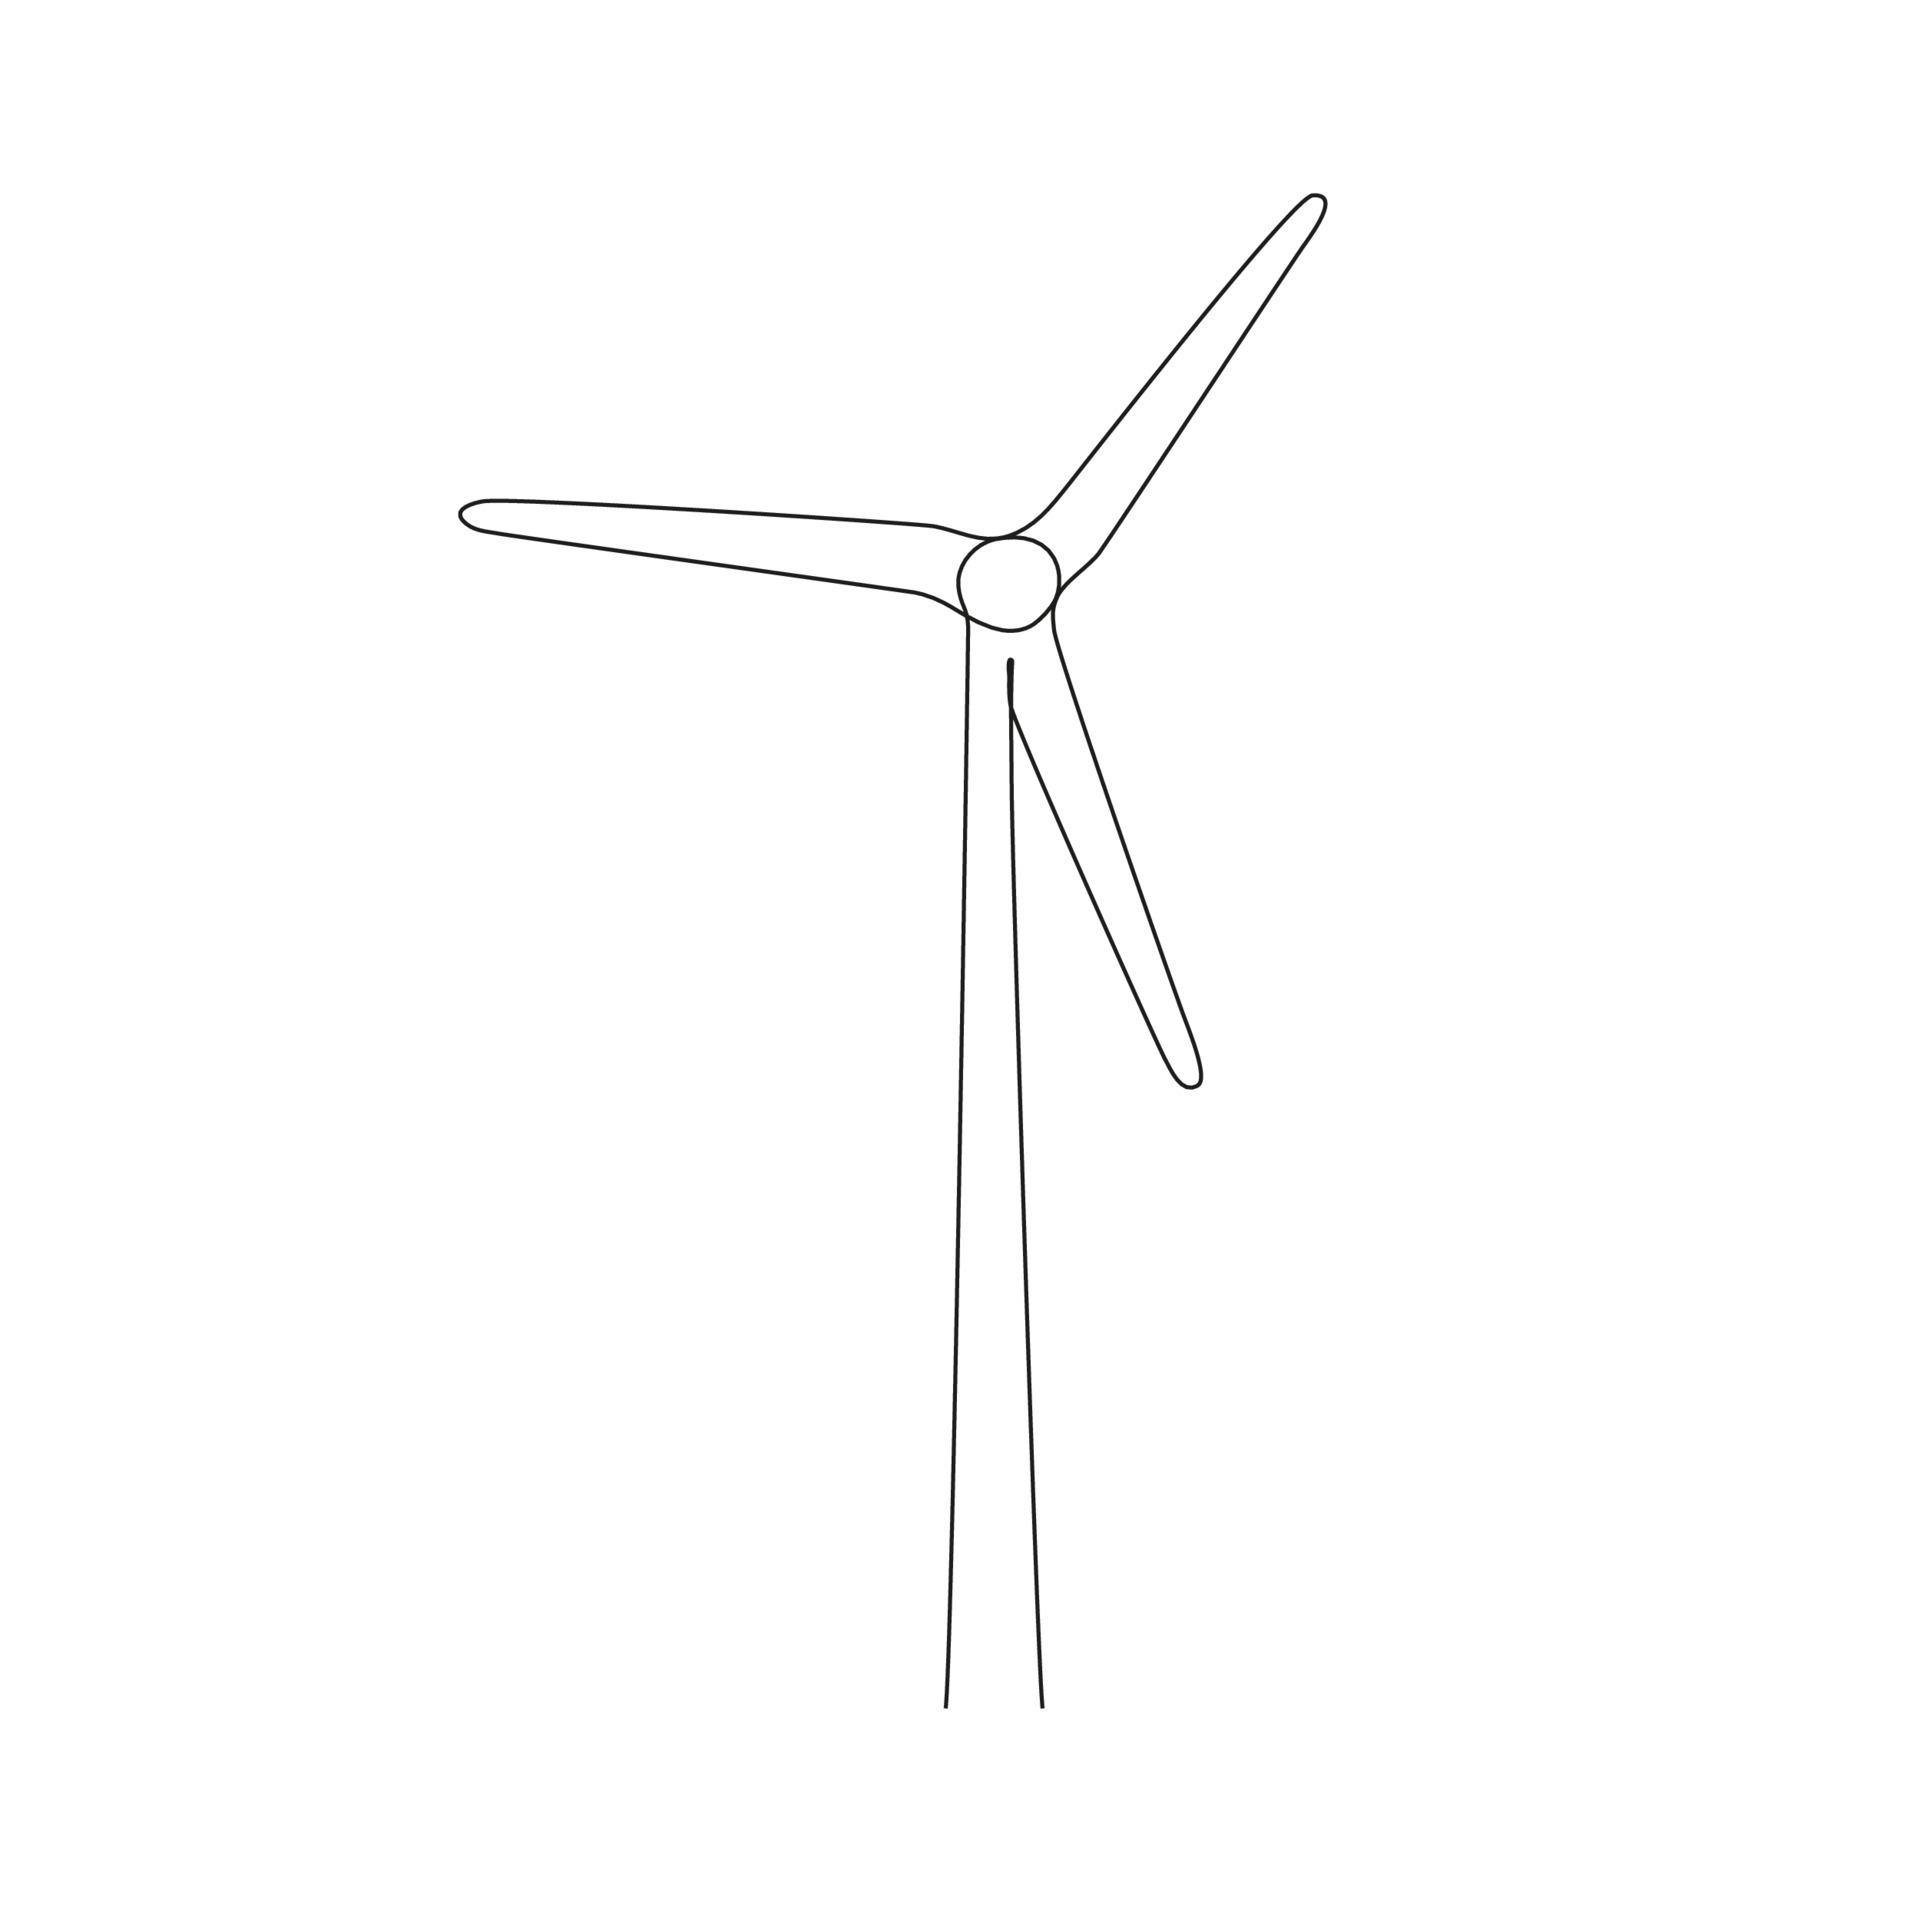 Banco de imagens : campo, moinho de vento, meio Ambiente, máquina, turbina  de vento, Pinwheel, energia eólica, força do vento, atual, Parque eólico,  energia renovável, Revolução energética, tecnologia ambiental, Vento  5068x2851 - 